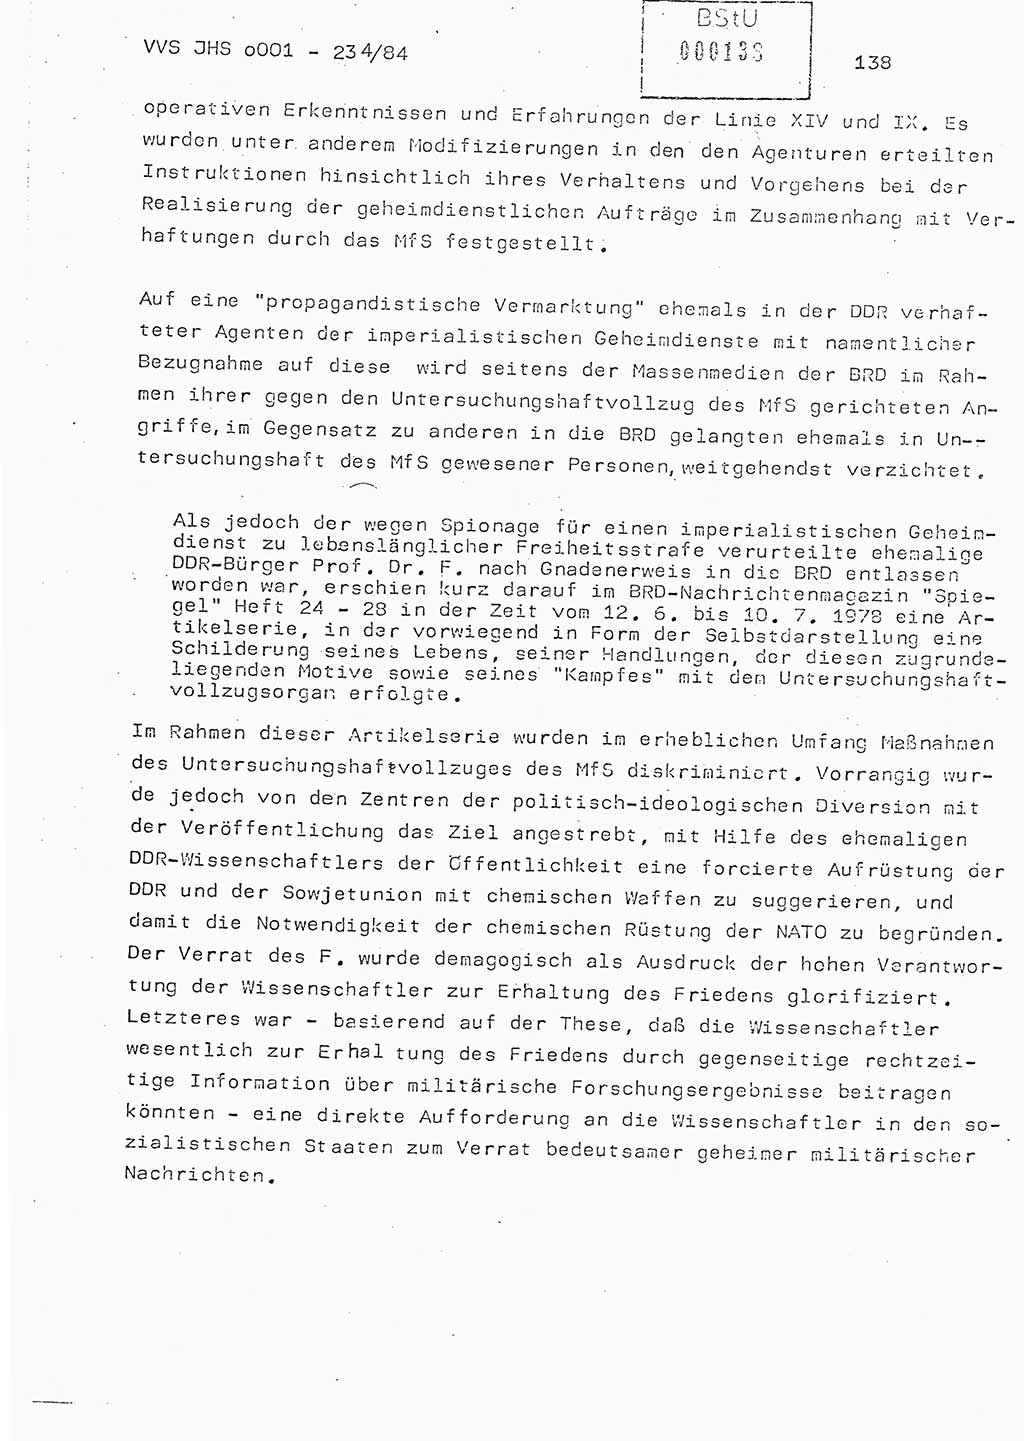 Dissertation Oberst Siegfried Rataizick (Abt. ⅩⅣ), Oberstleutnant Volkmar Heinz (Abt. ⅩⅣ), Oberstleutnant Werner Stein (HA Ⅸ), Hauptmann Heinz Conrad (JHS), Ministerium für Staatssicherheit (MfS) [Deutsche Demokratische Republik (DDR)], Juristische Hochschule (JHS), Vertrauliche Verschlußsache (VVS) o001-234/84, Potsdam 1984, Seite 138 (Diss. MfS DDR JHS VVS o001-234/84 1984, S. 138)